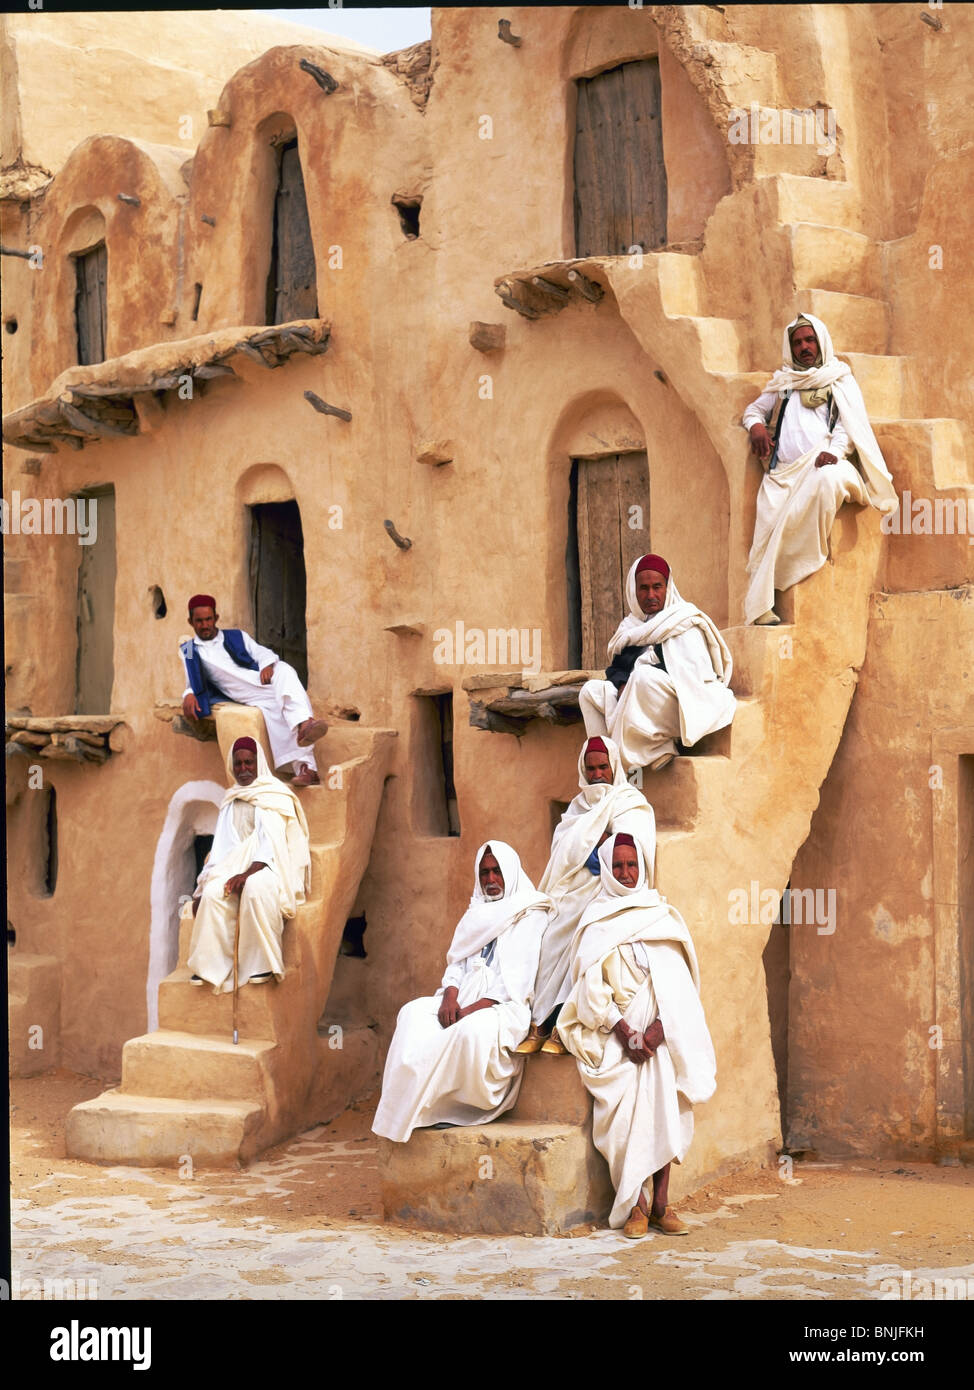 Túnez en diciembre de 2007 cerca de la ciudad de Tataouine Ksar Ouled Sultane granero hombres gente local cultura edificio desierto Foto de stock